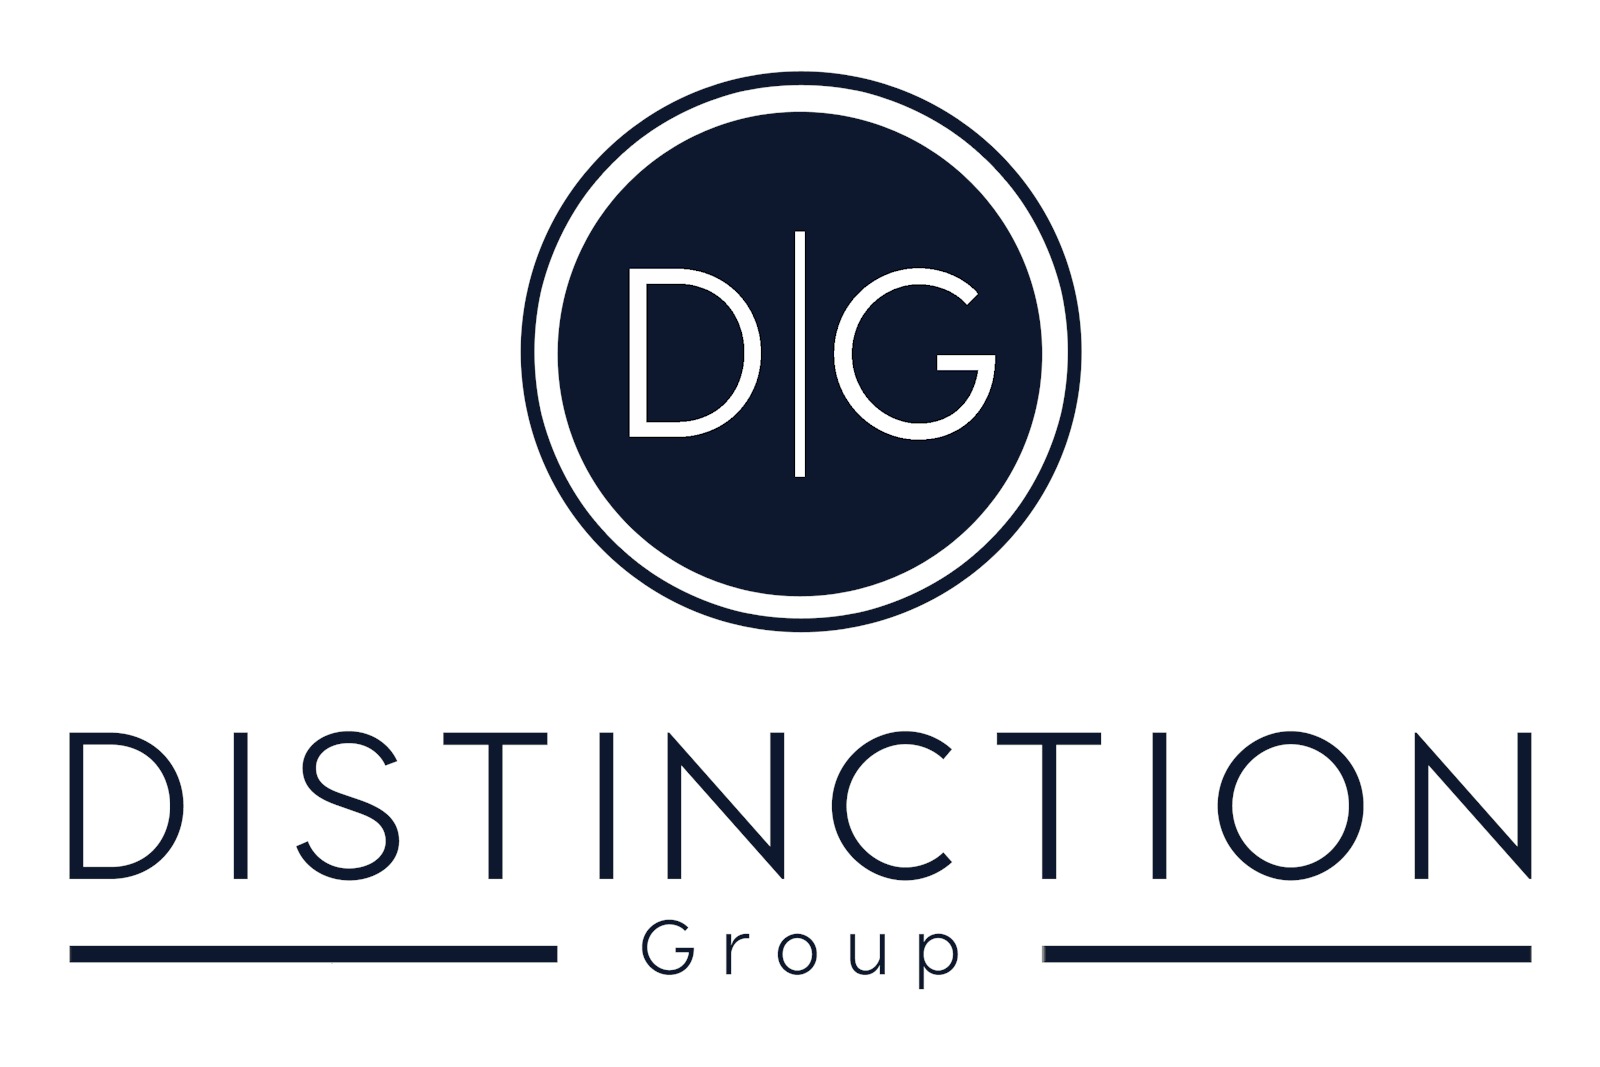 DG Blue Group Logo full 1